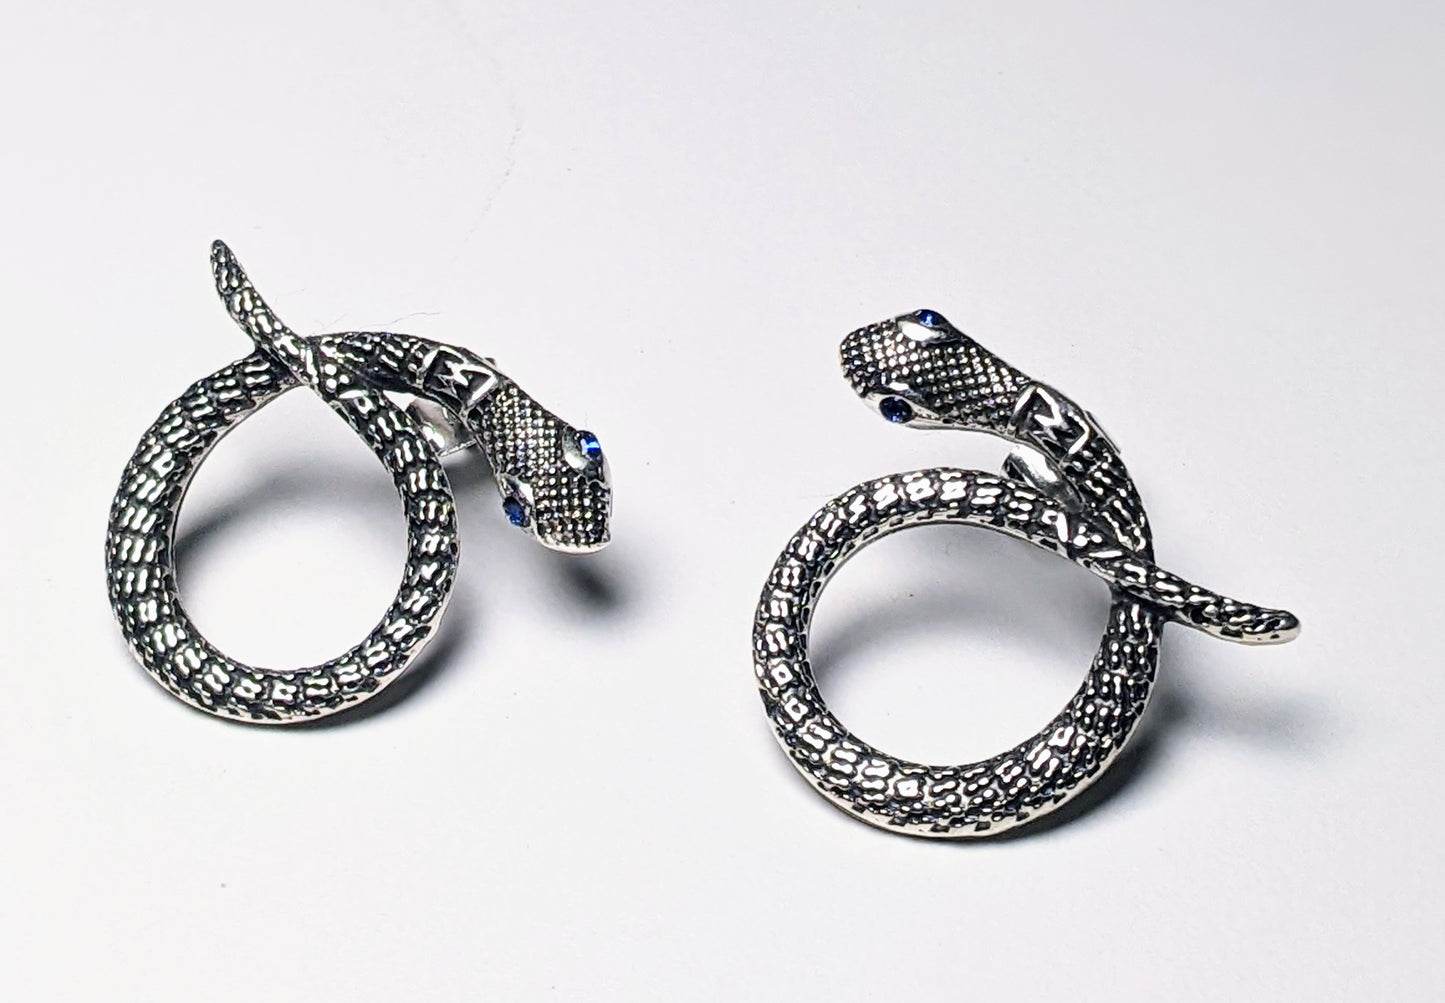 The Silver Snake Earrings